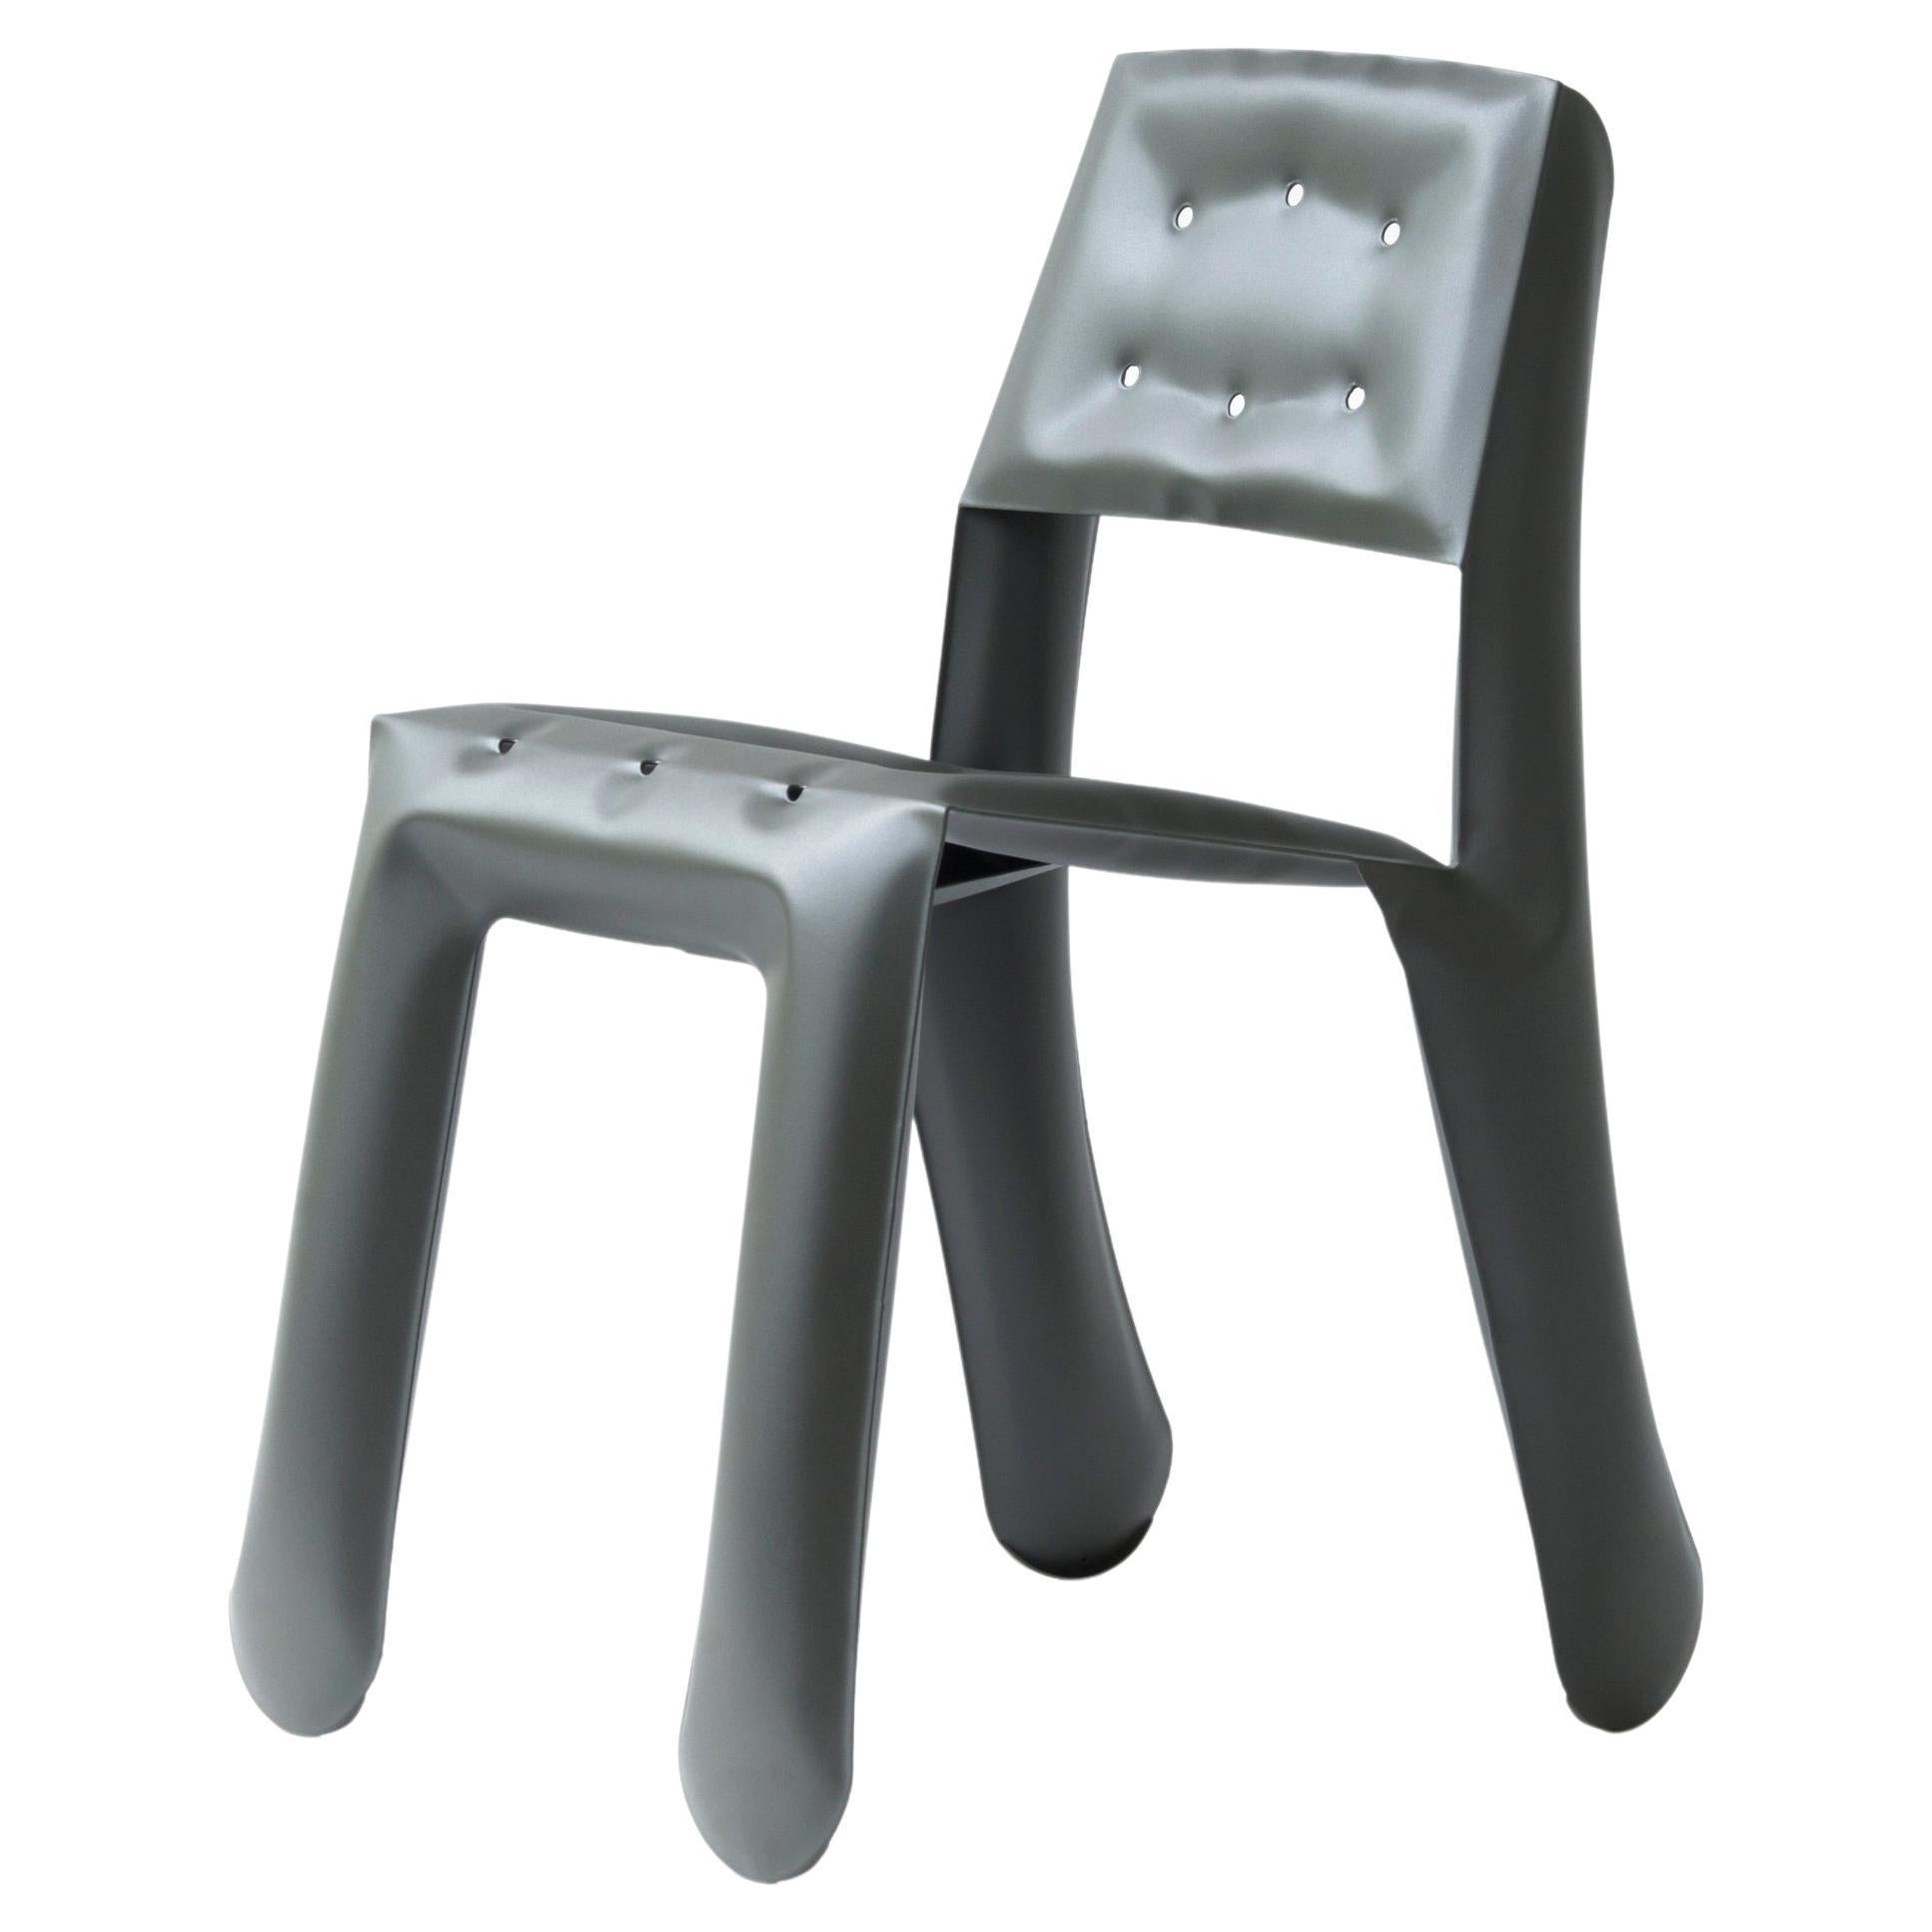 Umbra Grey Aluminum Chippensteel 0.5 Sculptural Chair by Zieta For Sale